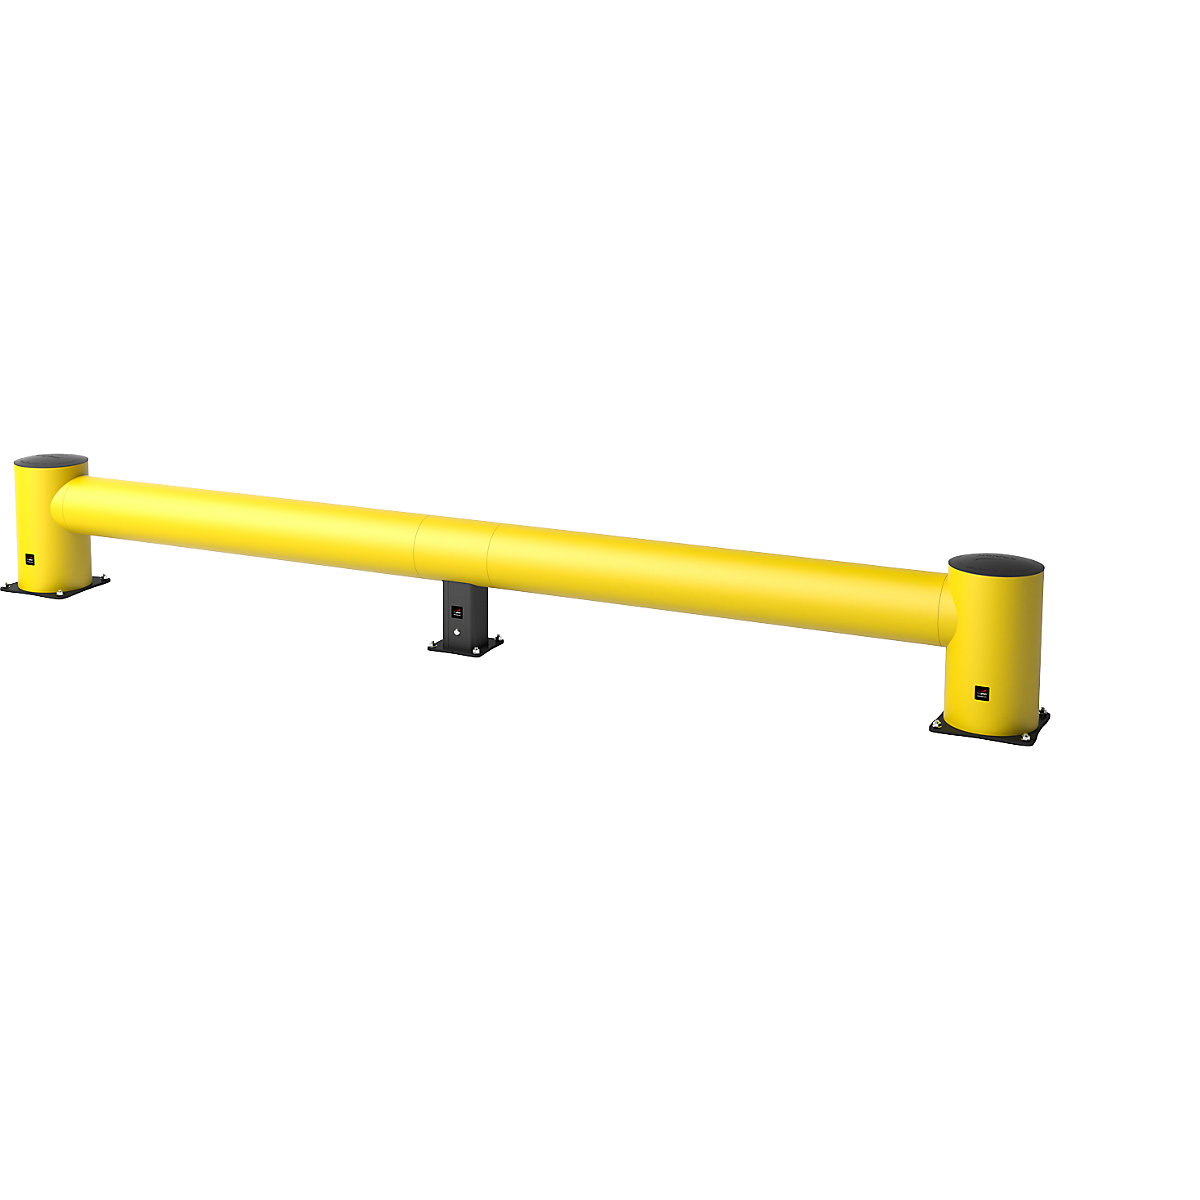 Rammschutz-Planke, TB400 Höhe 400 mm, gelb, Länge 5050 mm, Kunststoff, zum Aufdübeln